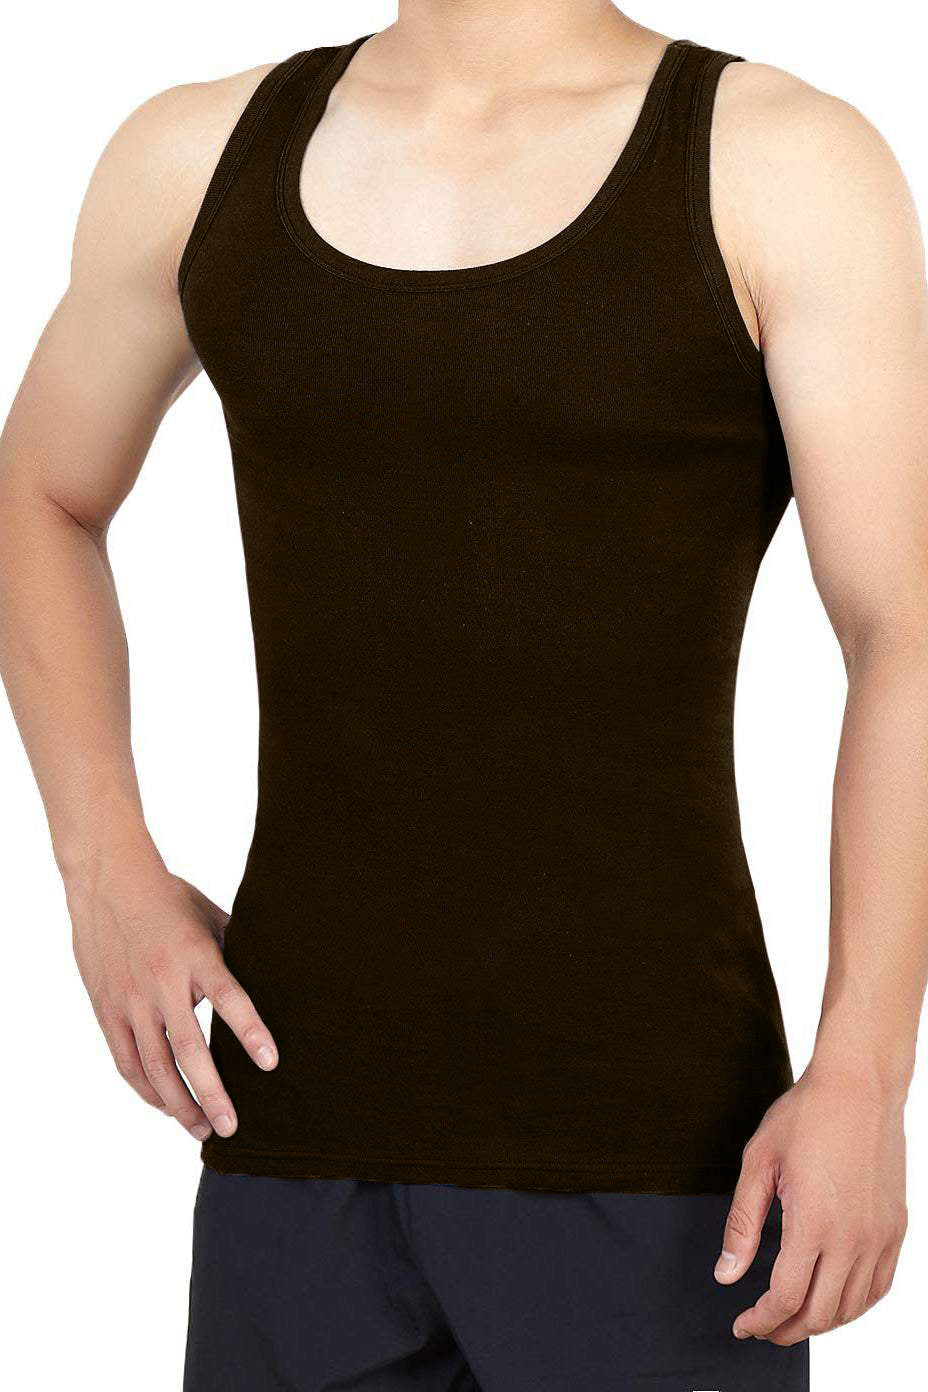 Men's Undershirts Vest 4 pieces SETS, Soft and Breathable underwear (Dark Brown)